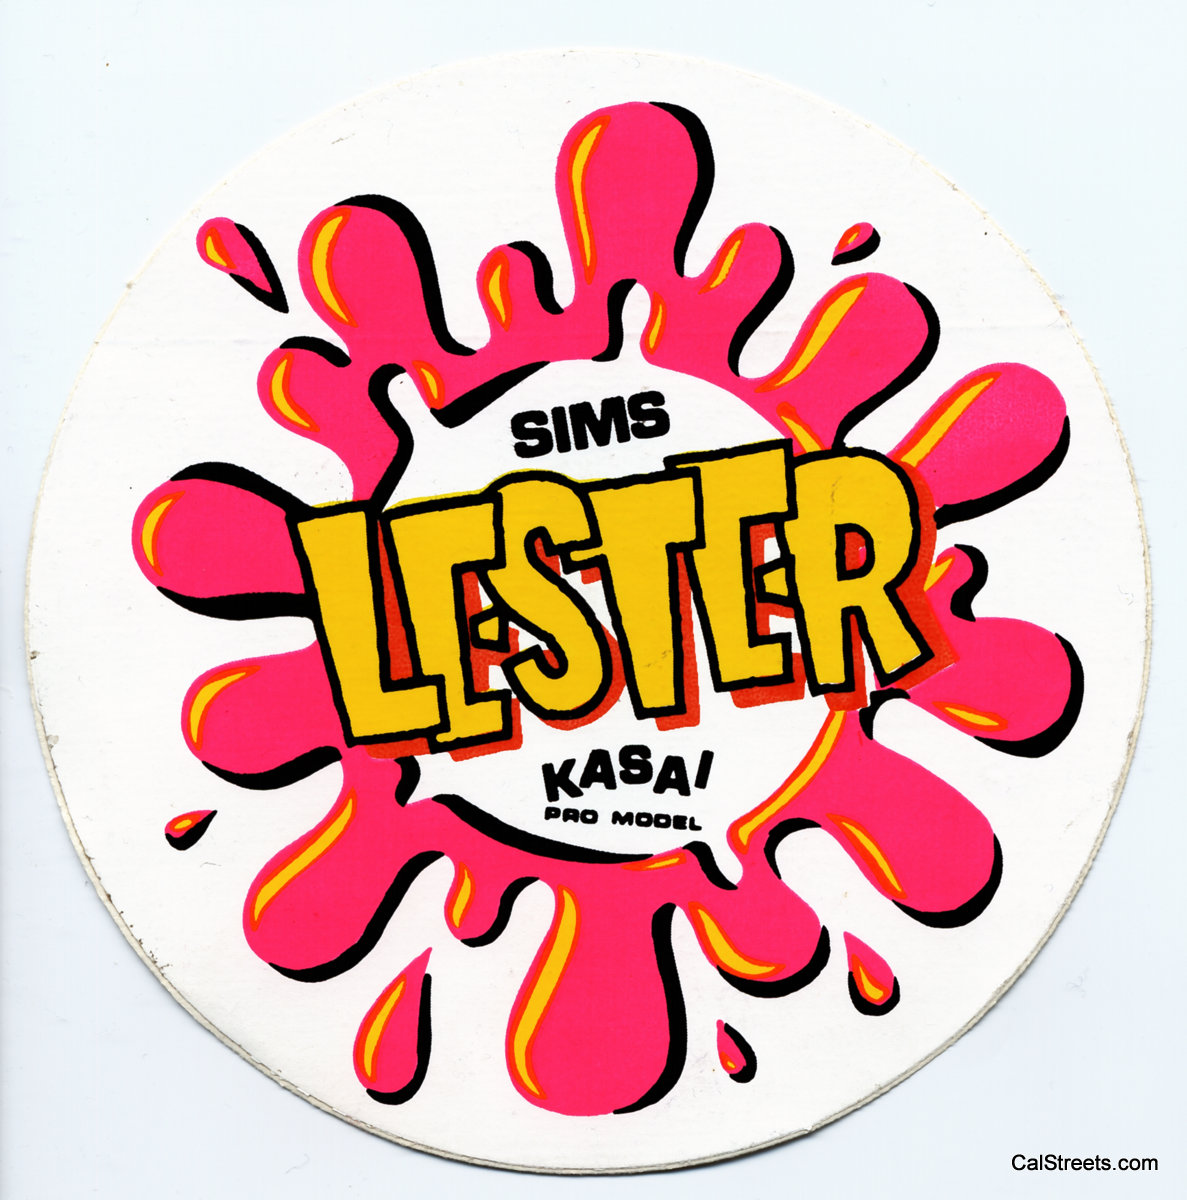 Sims-Kasia-Pro-Model-Lester.jpg